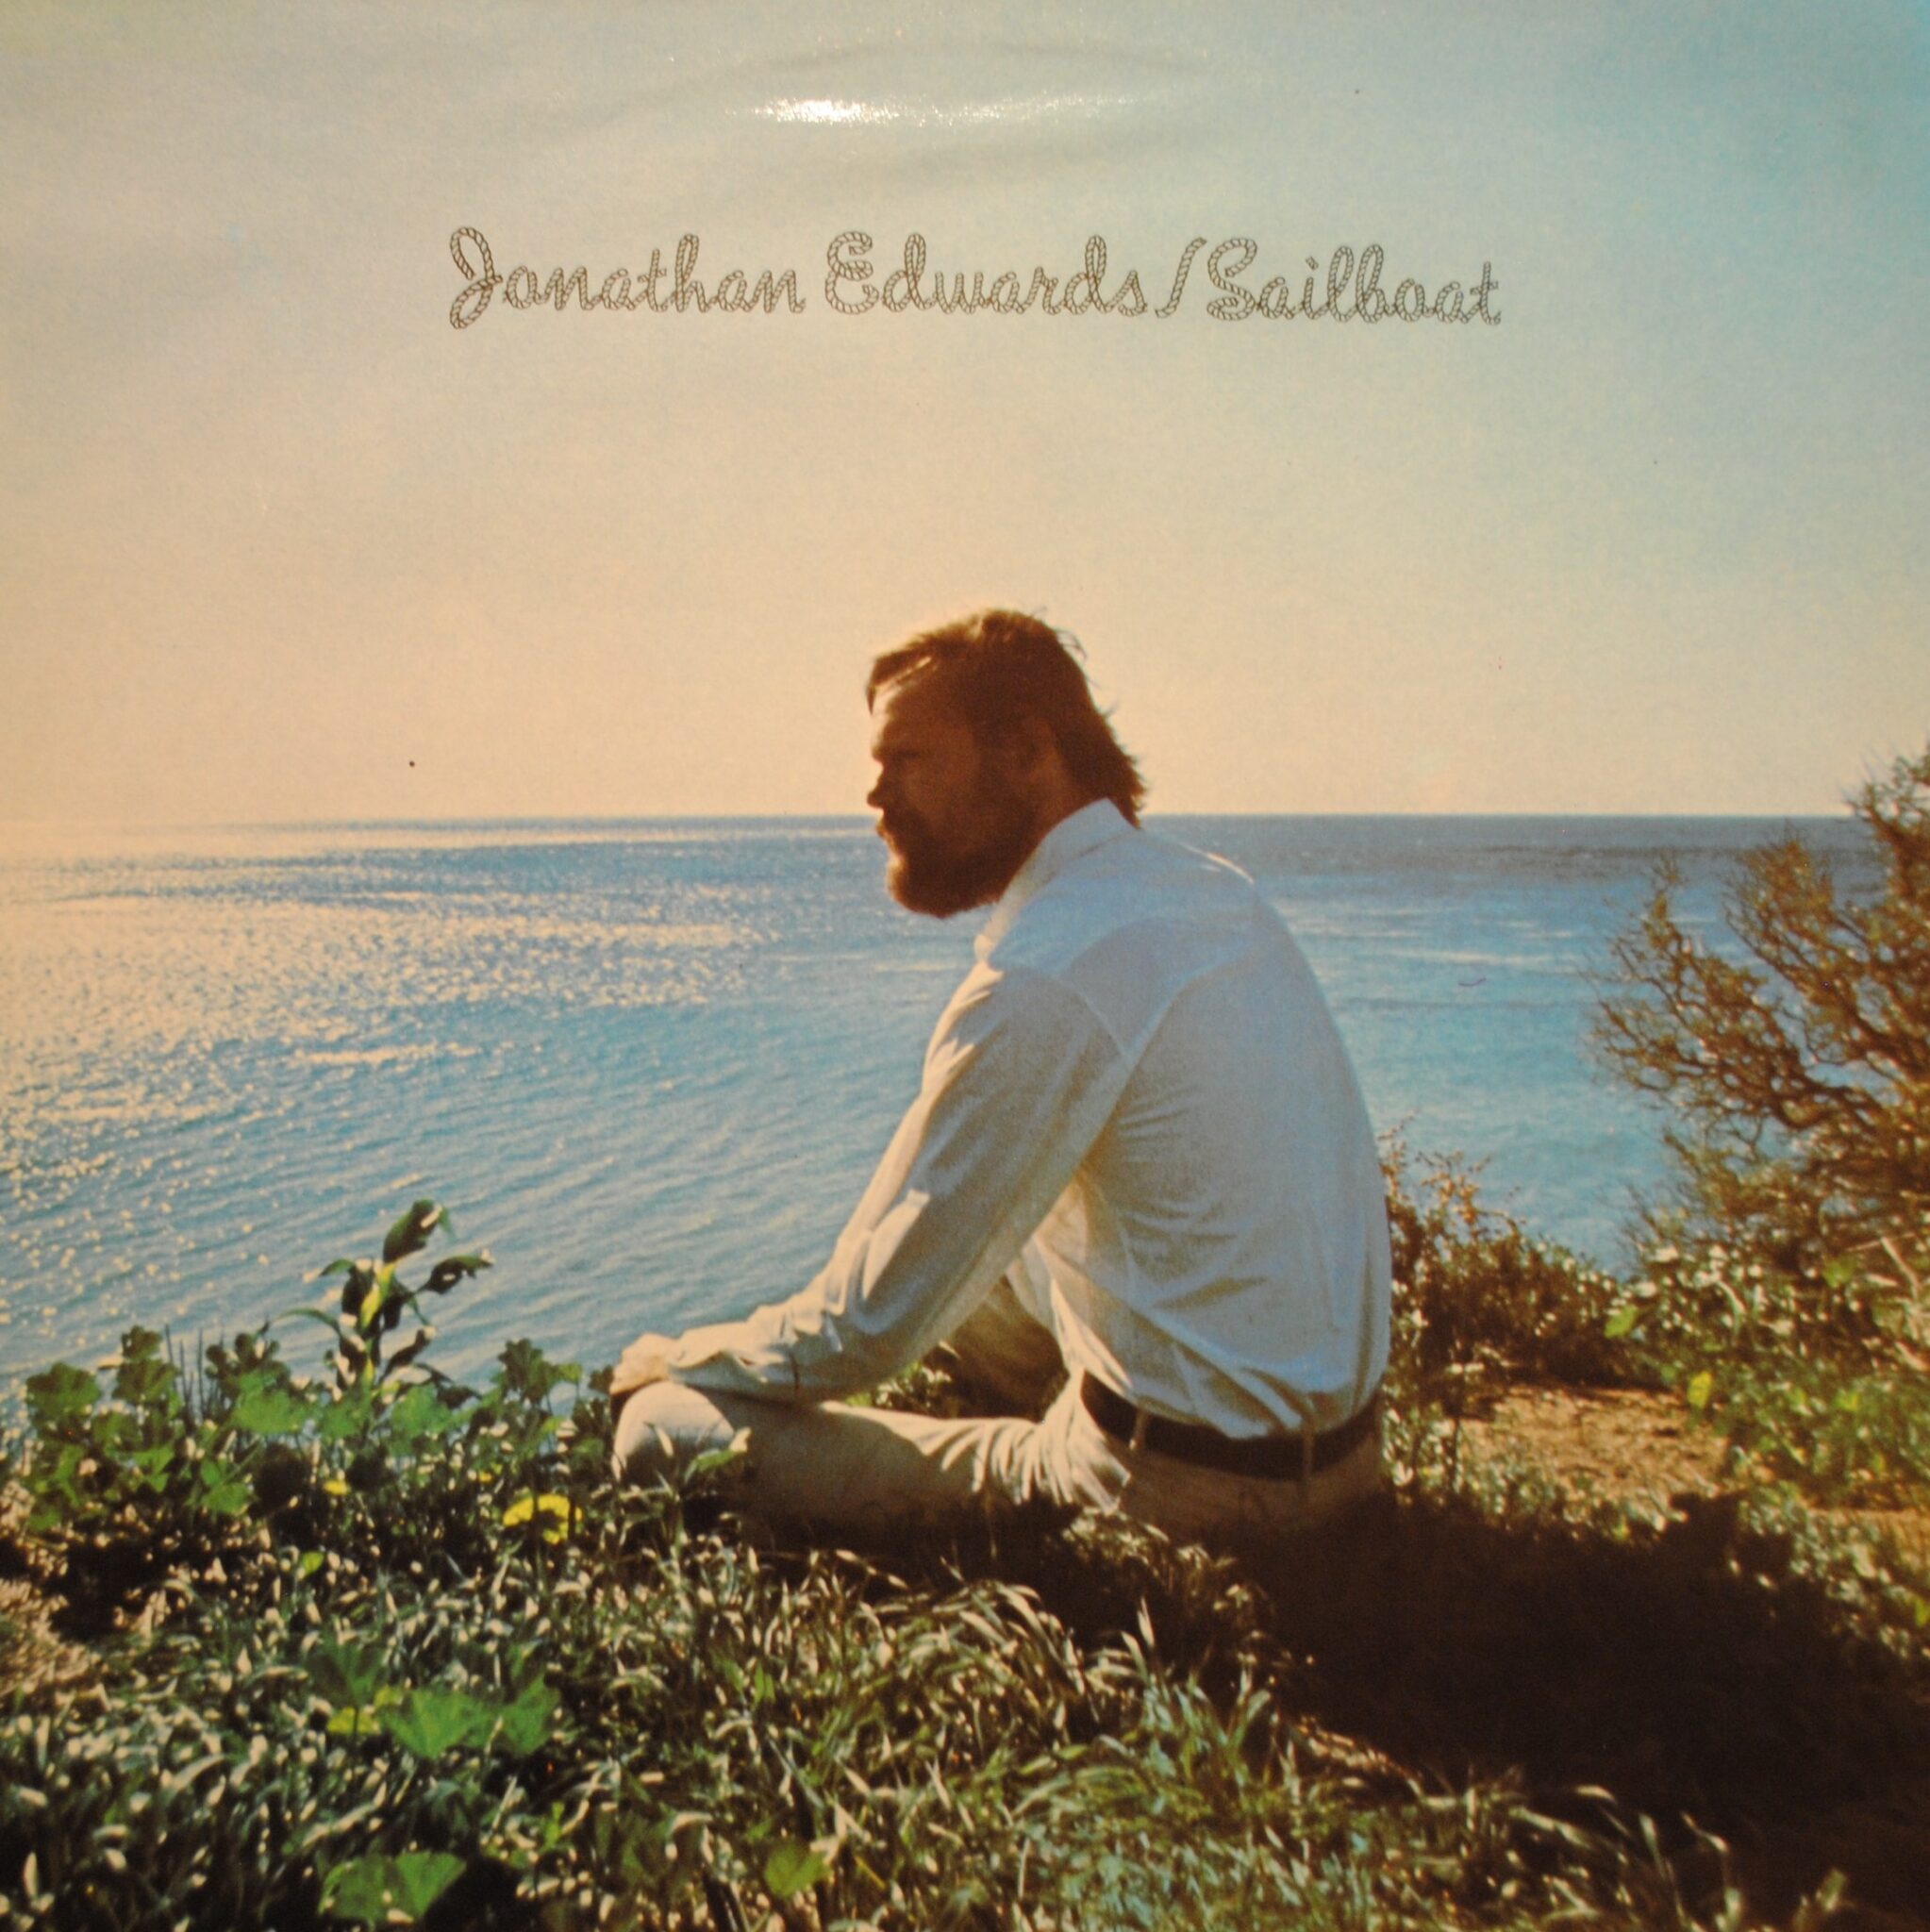 jonathan edwards sailboat songs